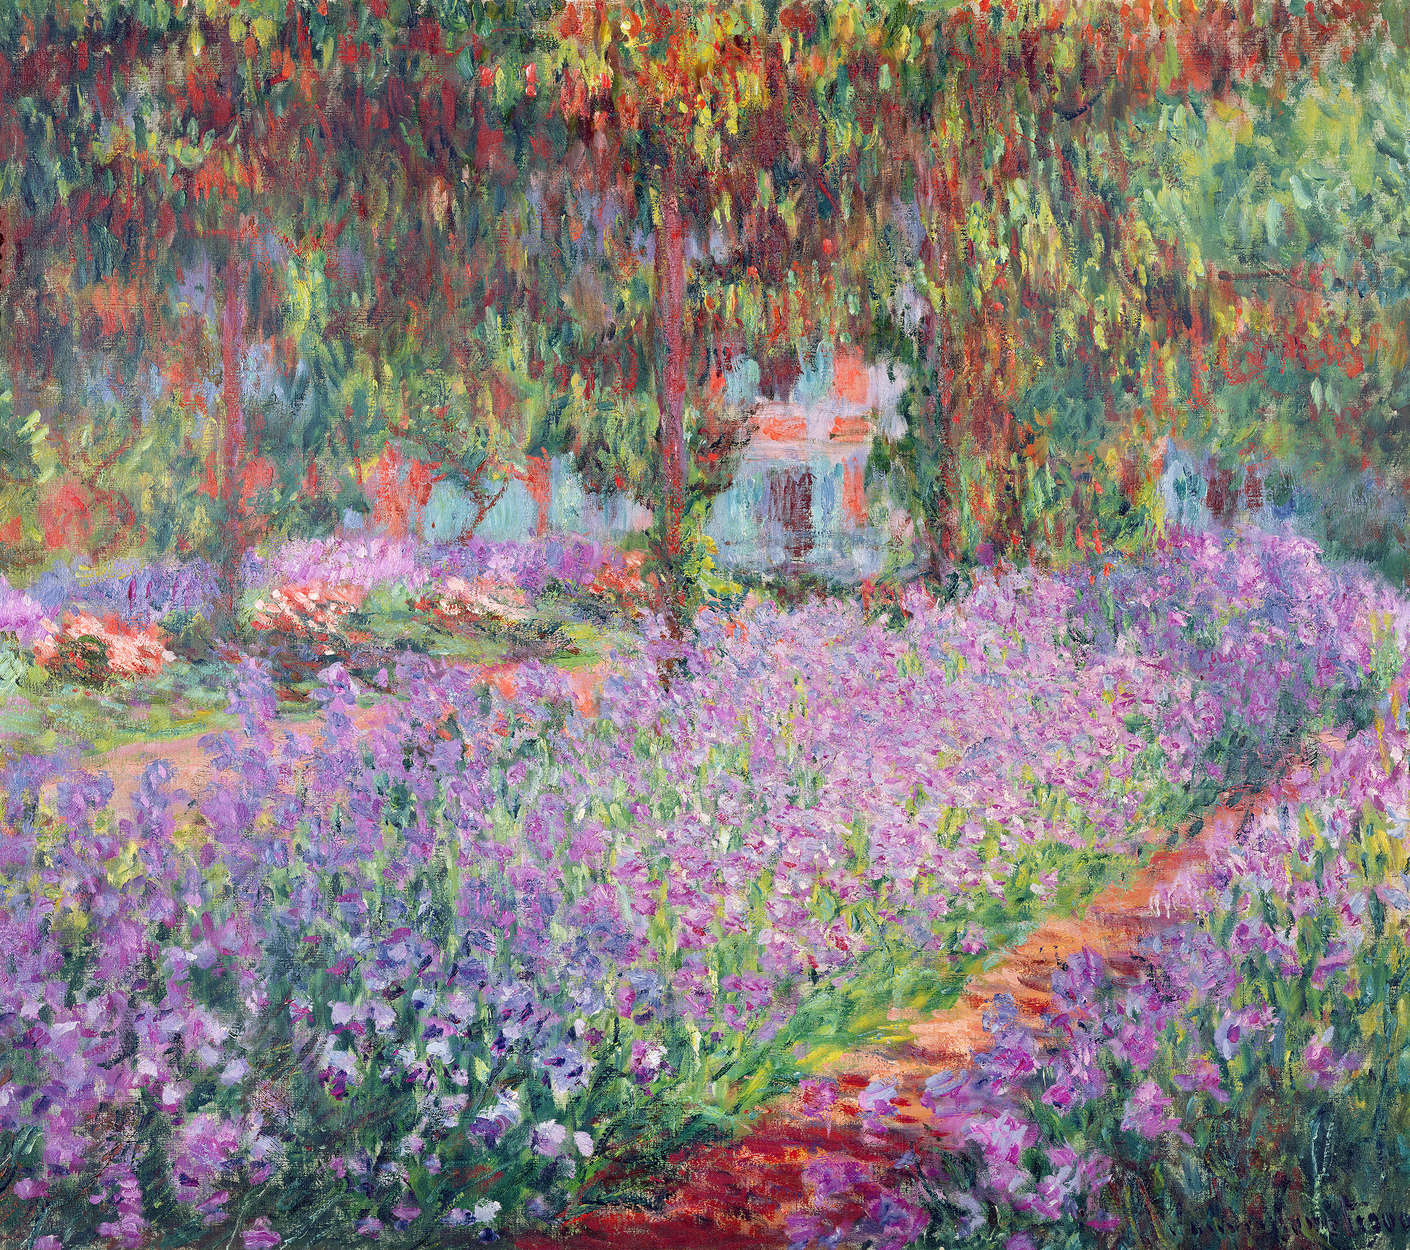             Fototapete "Der Garten des Künstlers in Giverny" von Claude Monet
        